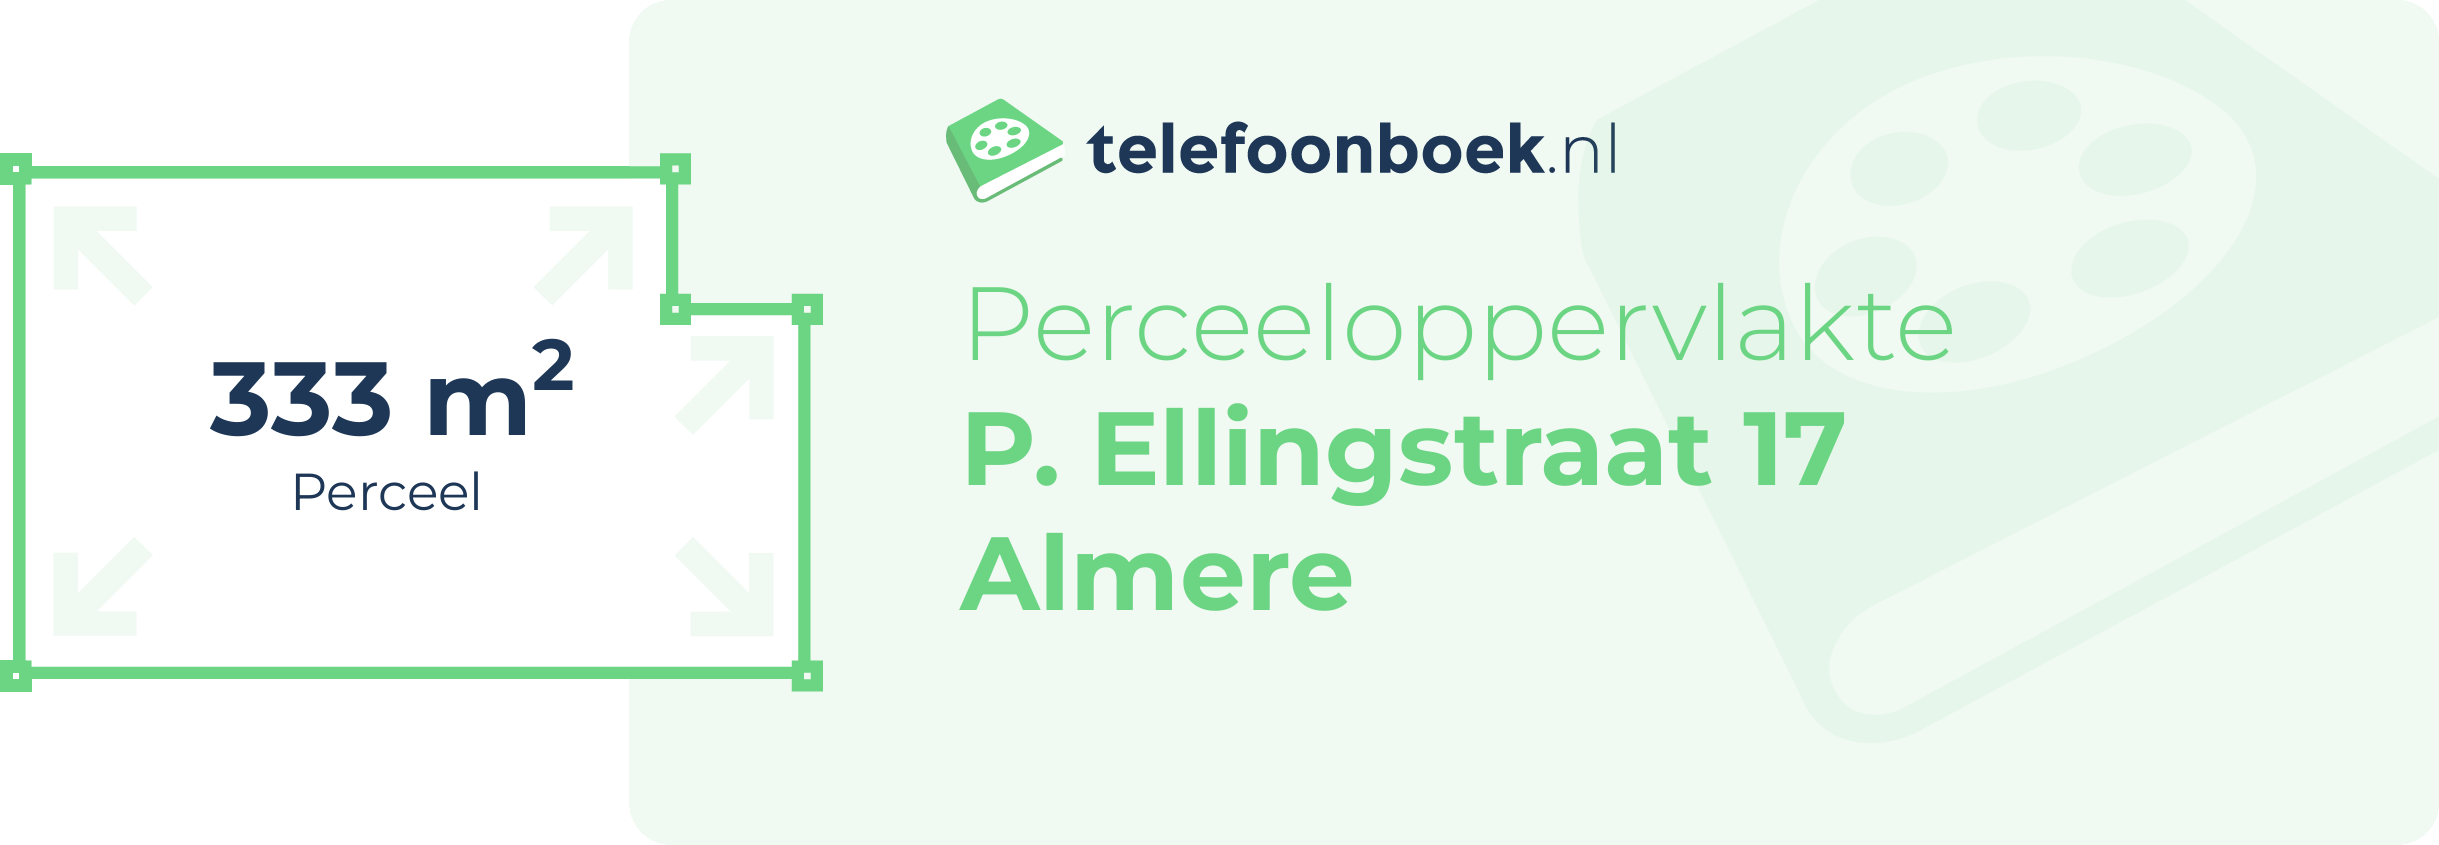 Perceeloppervlakte P. Ellingstraat 17 Almere